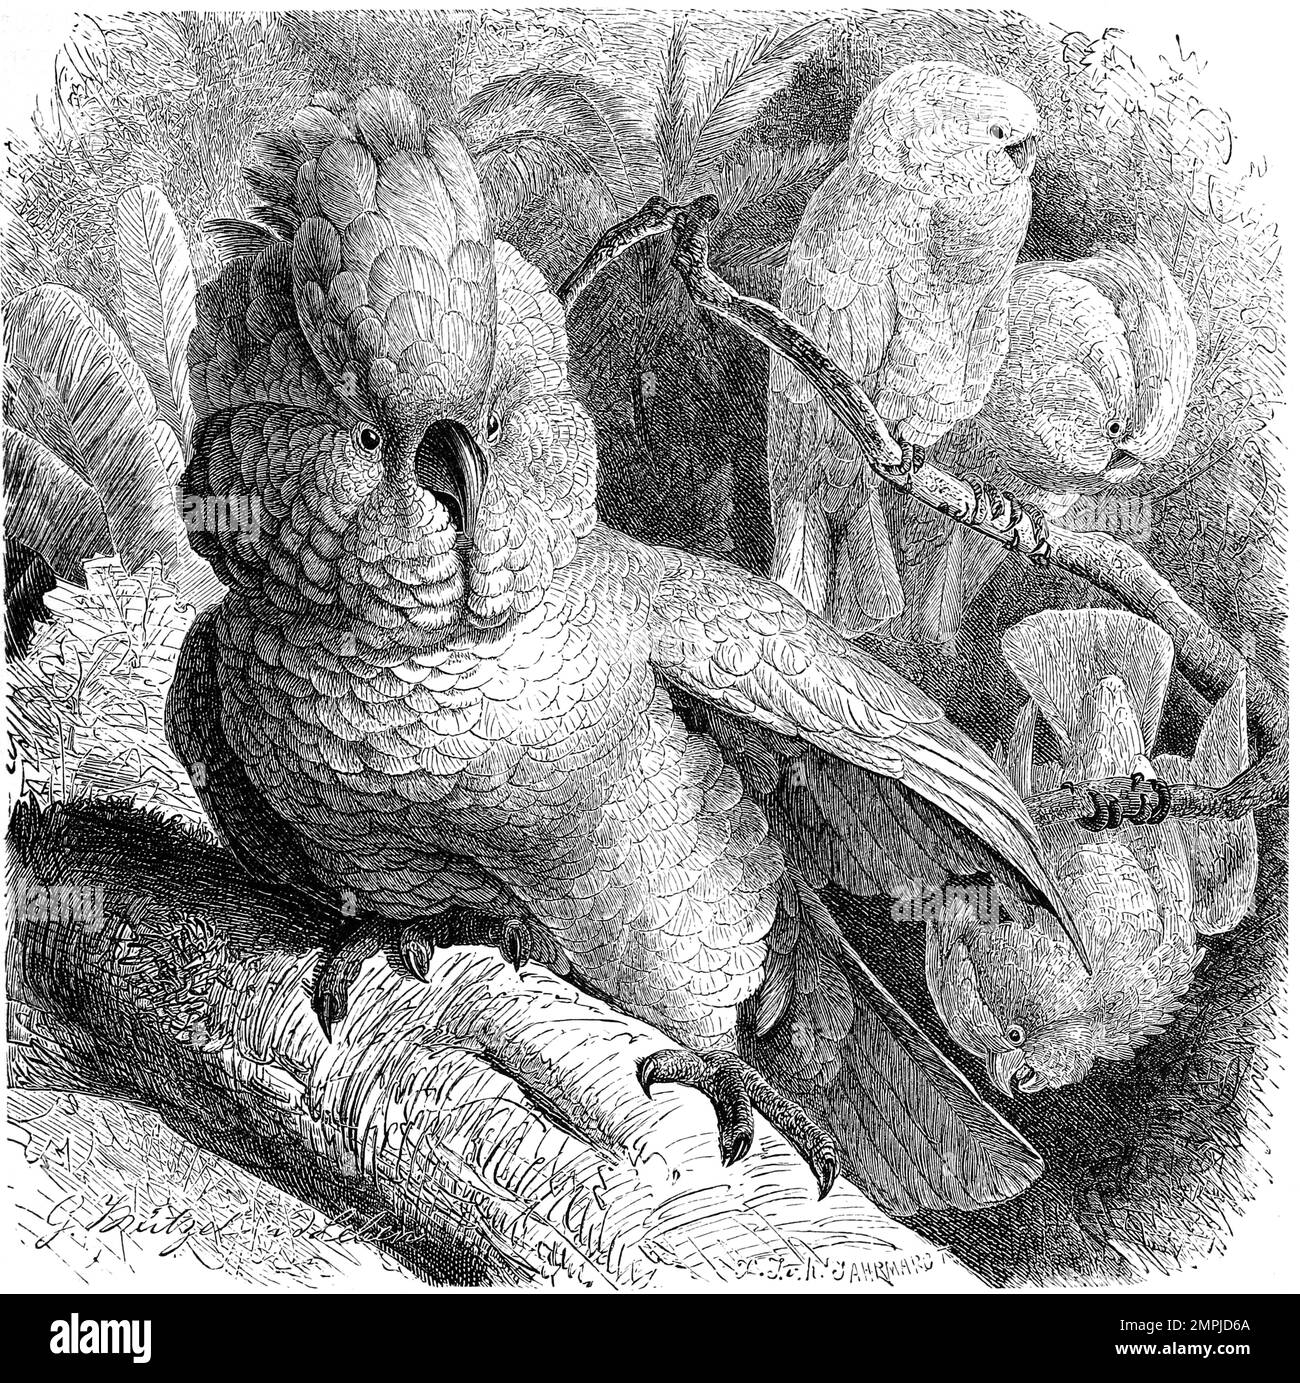 Vogel, Molukkenkakadu, Cacatua moluccensis gehört zur Ordnung der Papageien, Historiisch, digital restaurierte Reproduktion von einer Vorlage aus dem 18. Jahrhundert Foto Stock